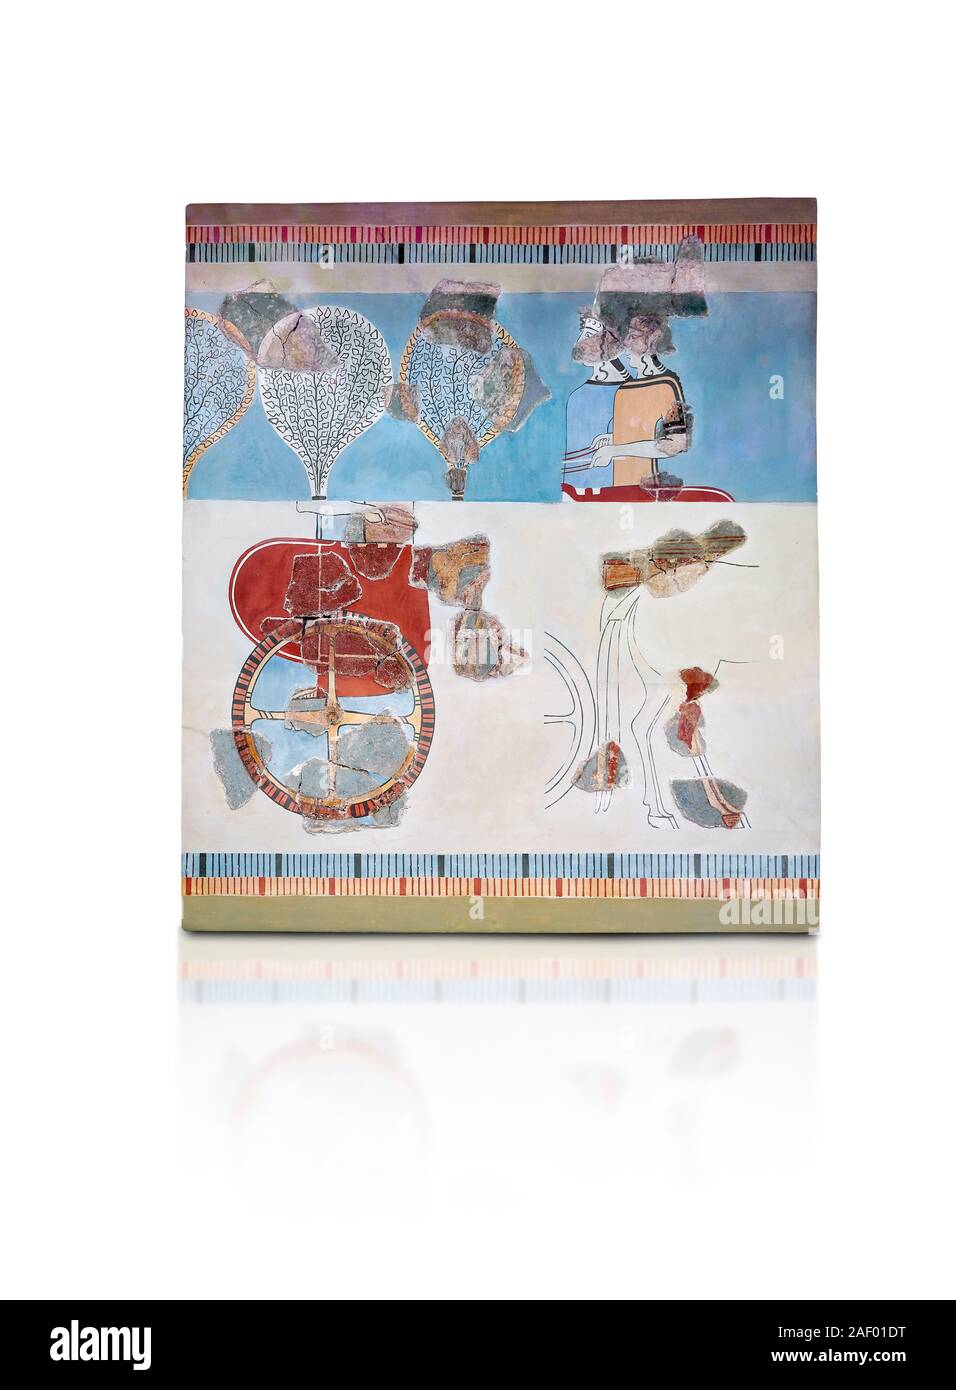 Micénicos Fresco la pintura de la pared de un Mycanaean chariot, posterior Palacio, Tirinto, Grecia. Museo Arqueológico de Atenas. Fondo blanco. 14Th Cent BC. Foto de stock